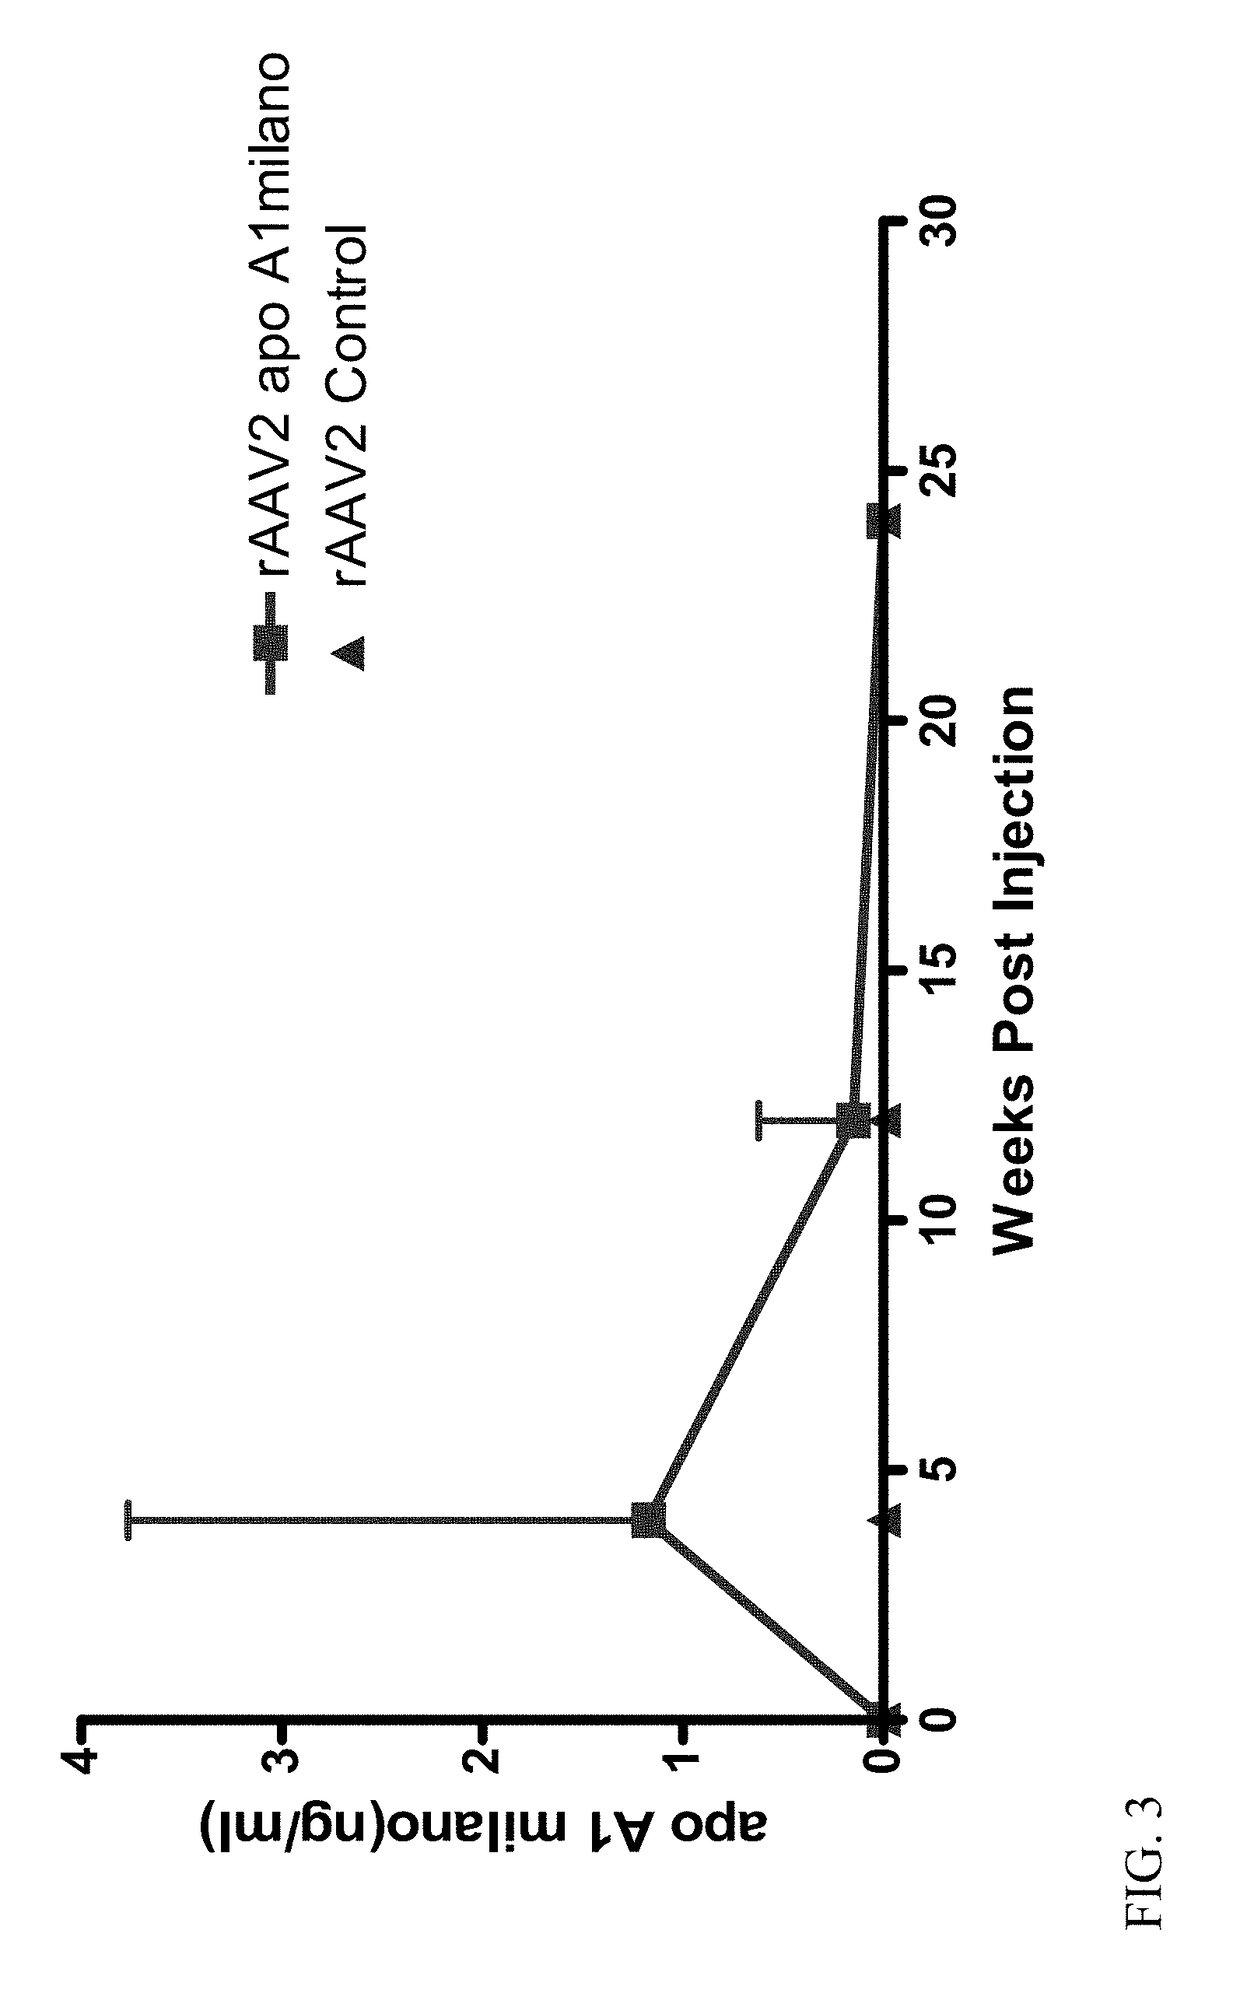 Atherosclerosis inhibition via modulation of monocyte-macrophage phenotype using apo a-i milano gene transfer